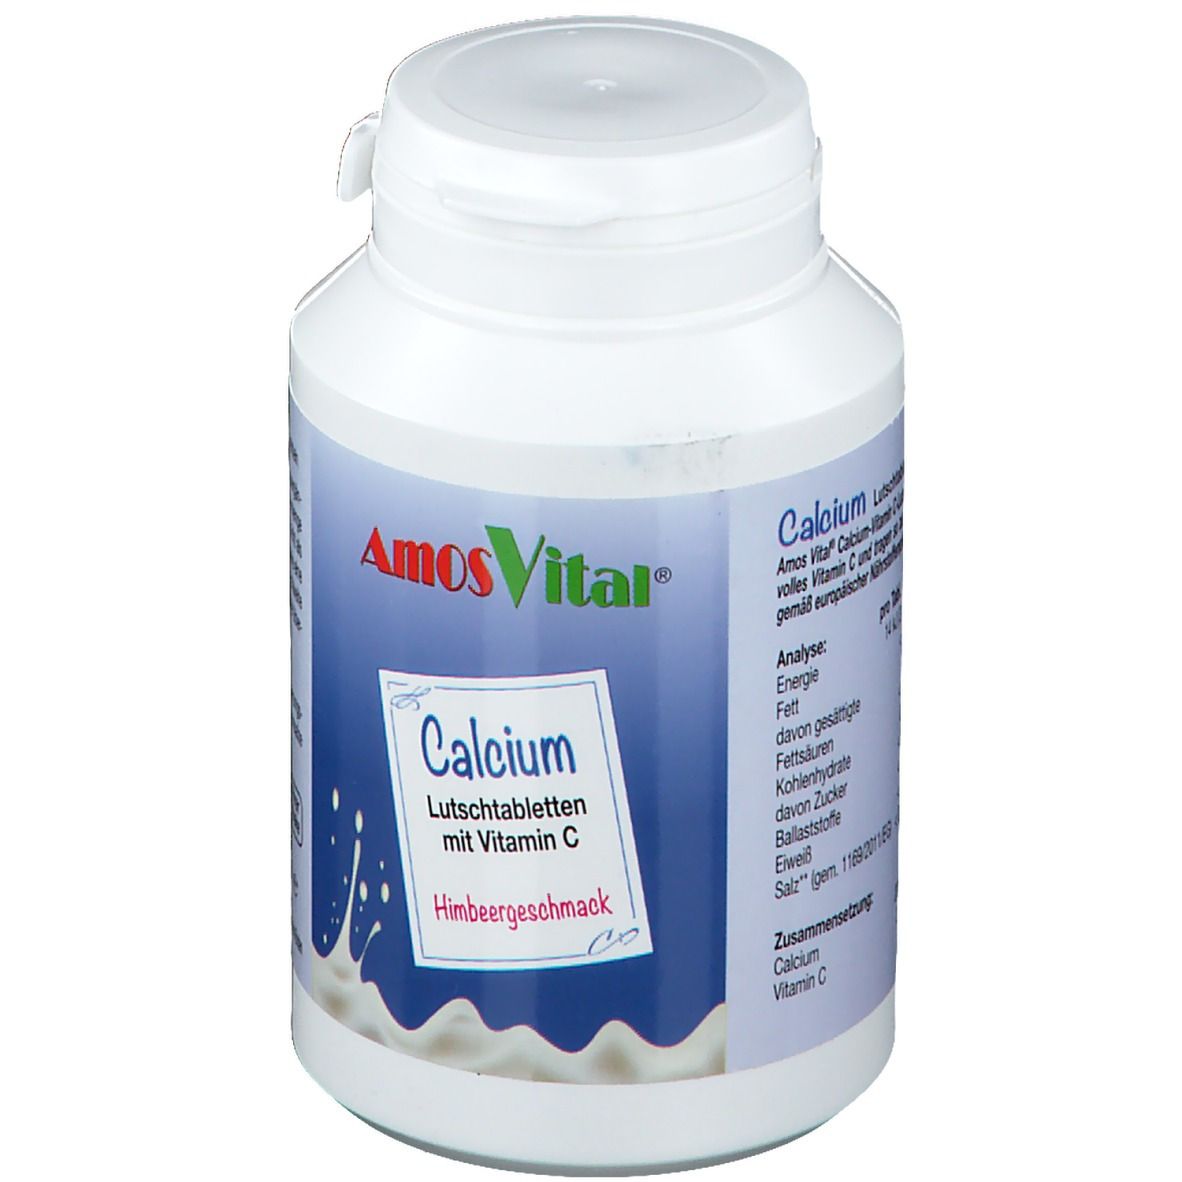 AmosVital® Calcium mit Vitamin C